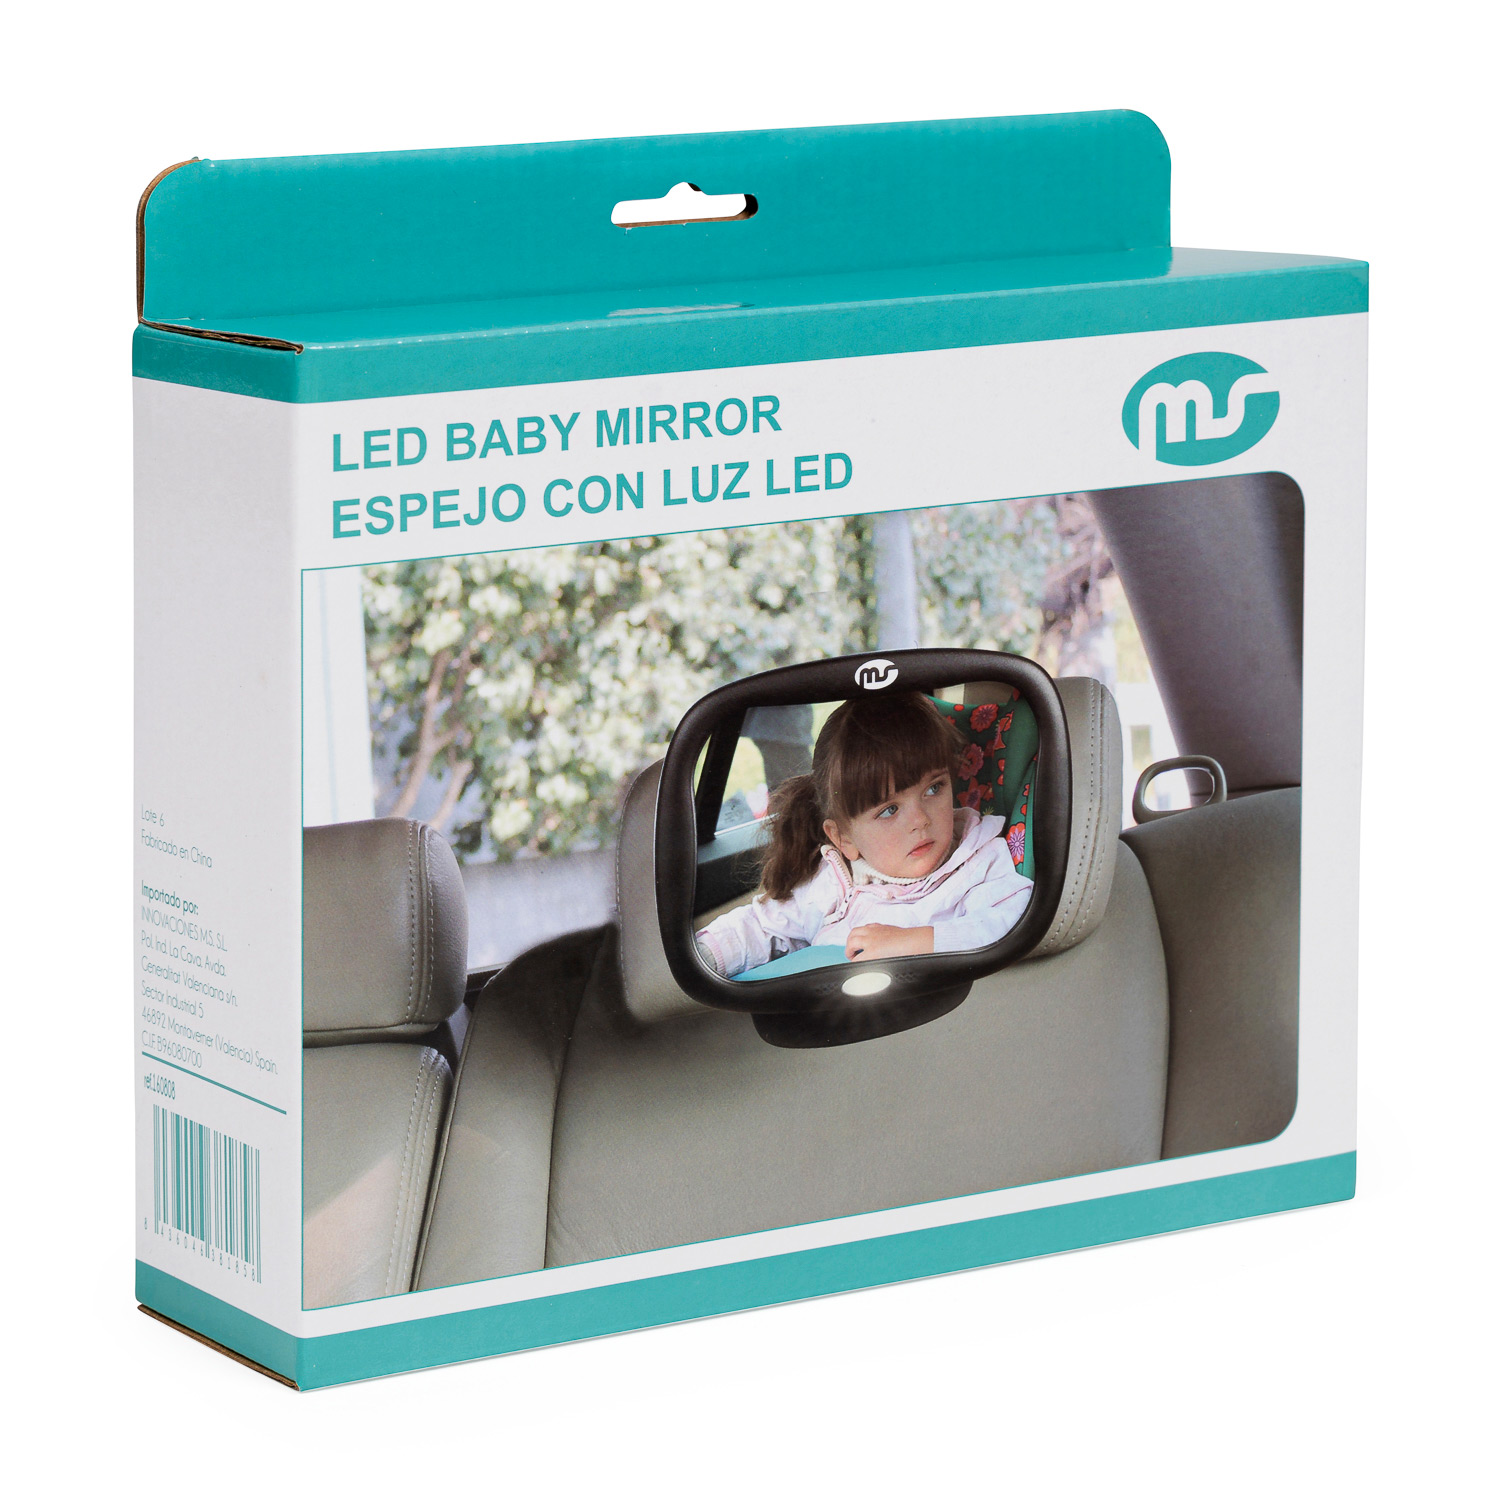  Espejo de coche para bebé con luz innokids Dual Mode  Iluminación LED por control remoto Vista clara del bebé en el asiento  trasero orientado hacia atrás mientras conduce por la noche (